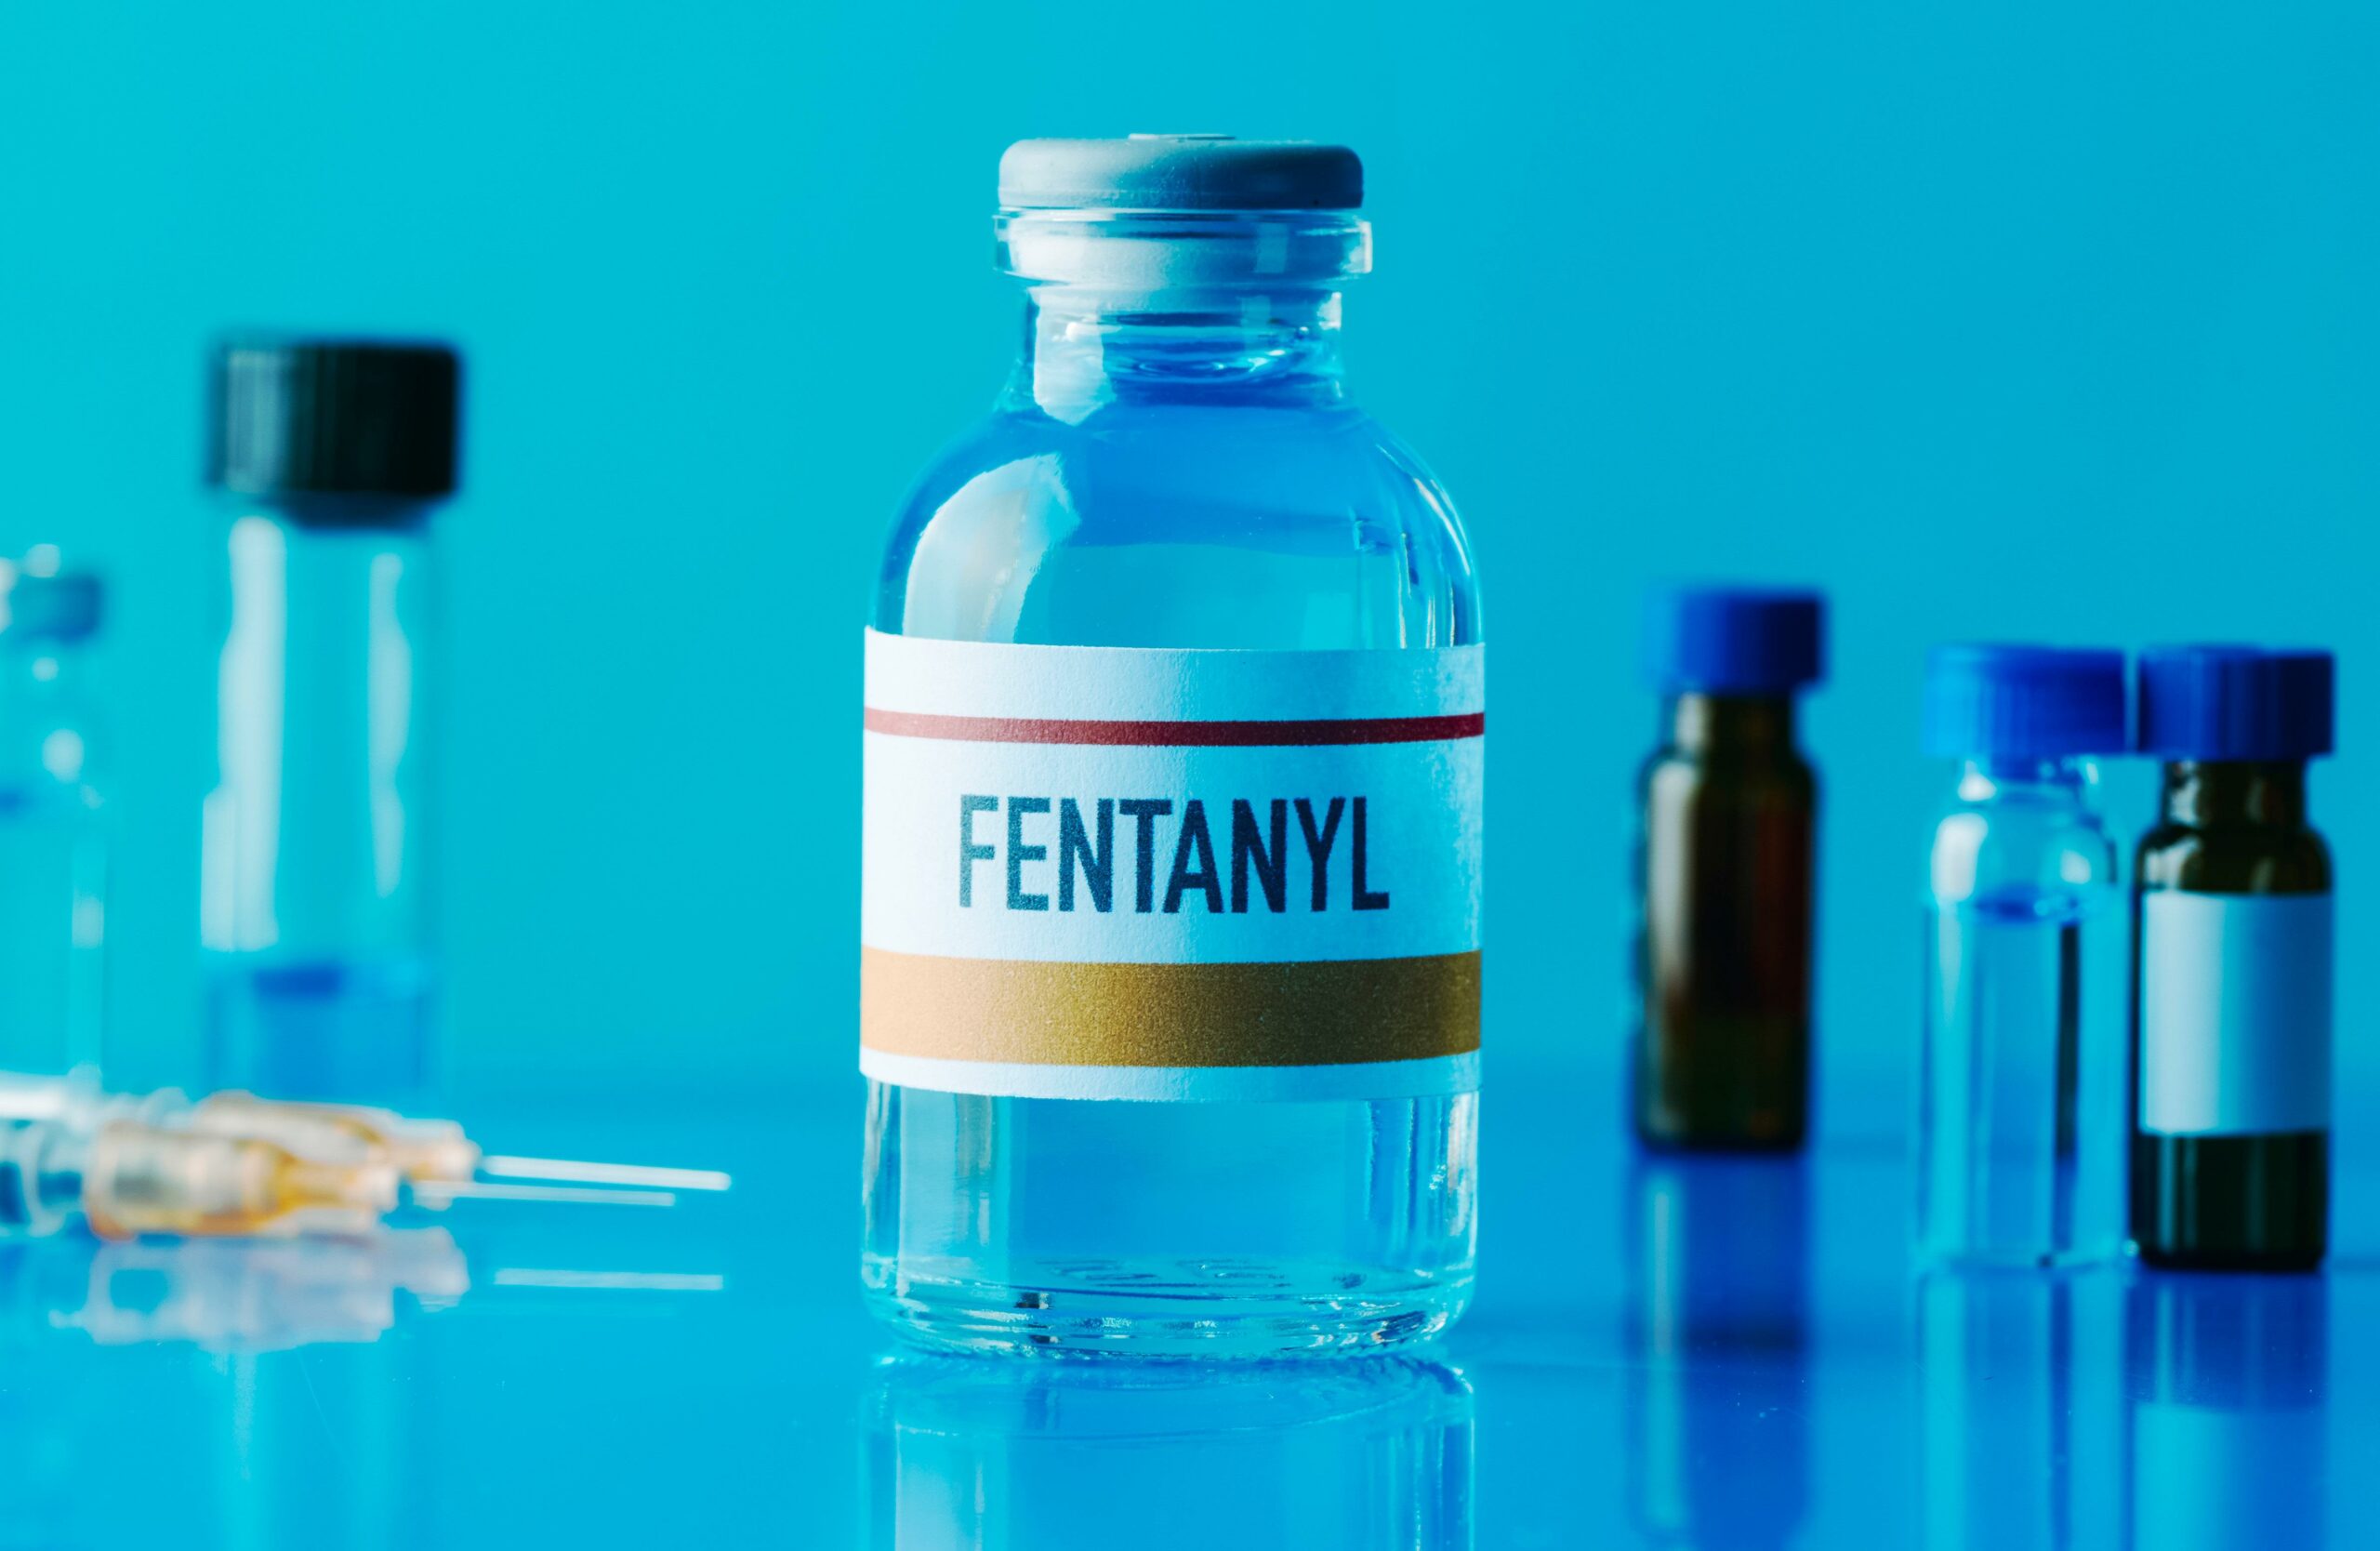  ‣ adn24 allerta alta in italia: trovato fentanyl in una dose di eroina